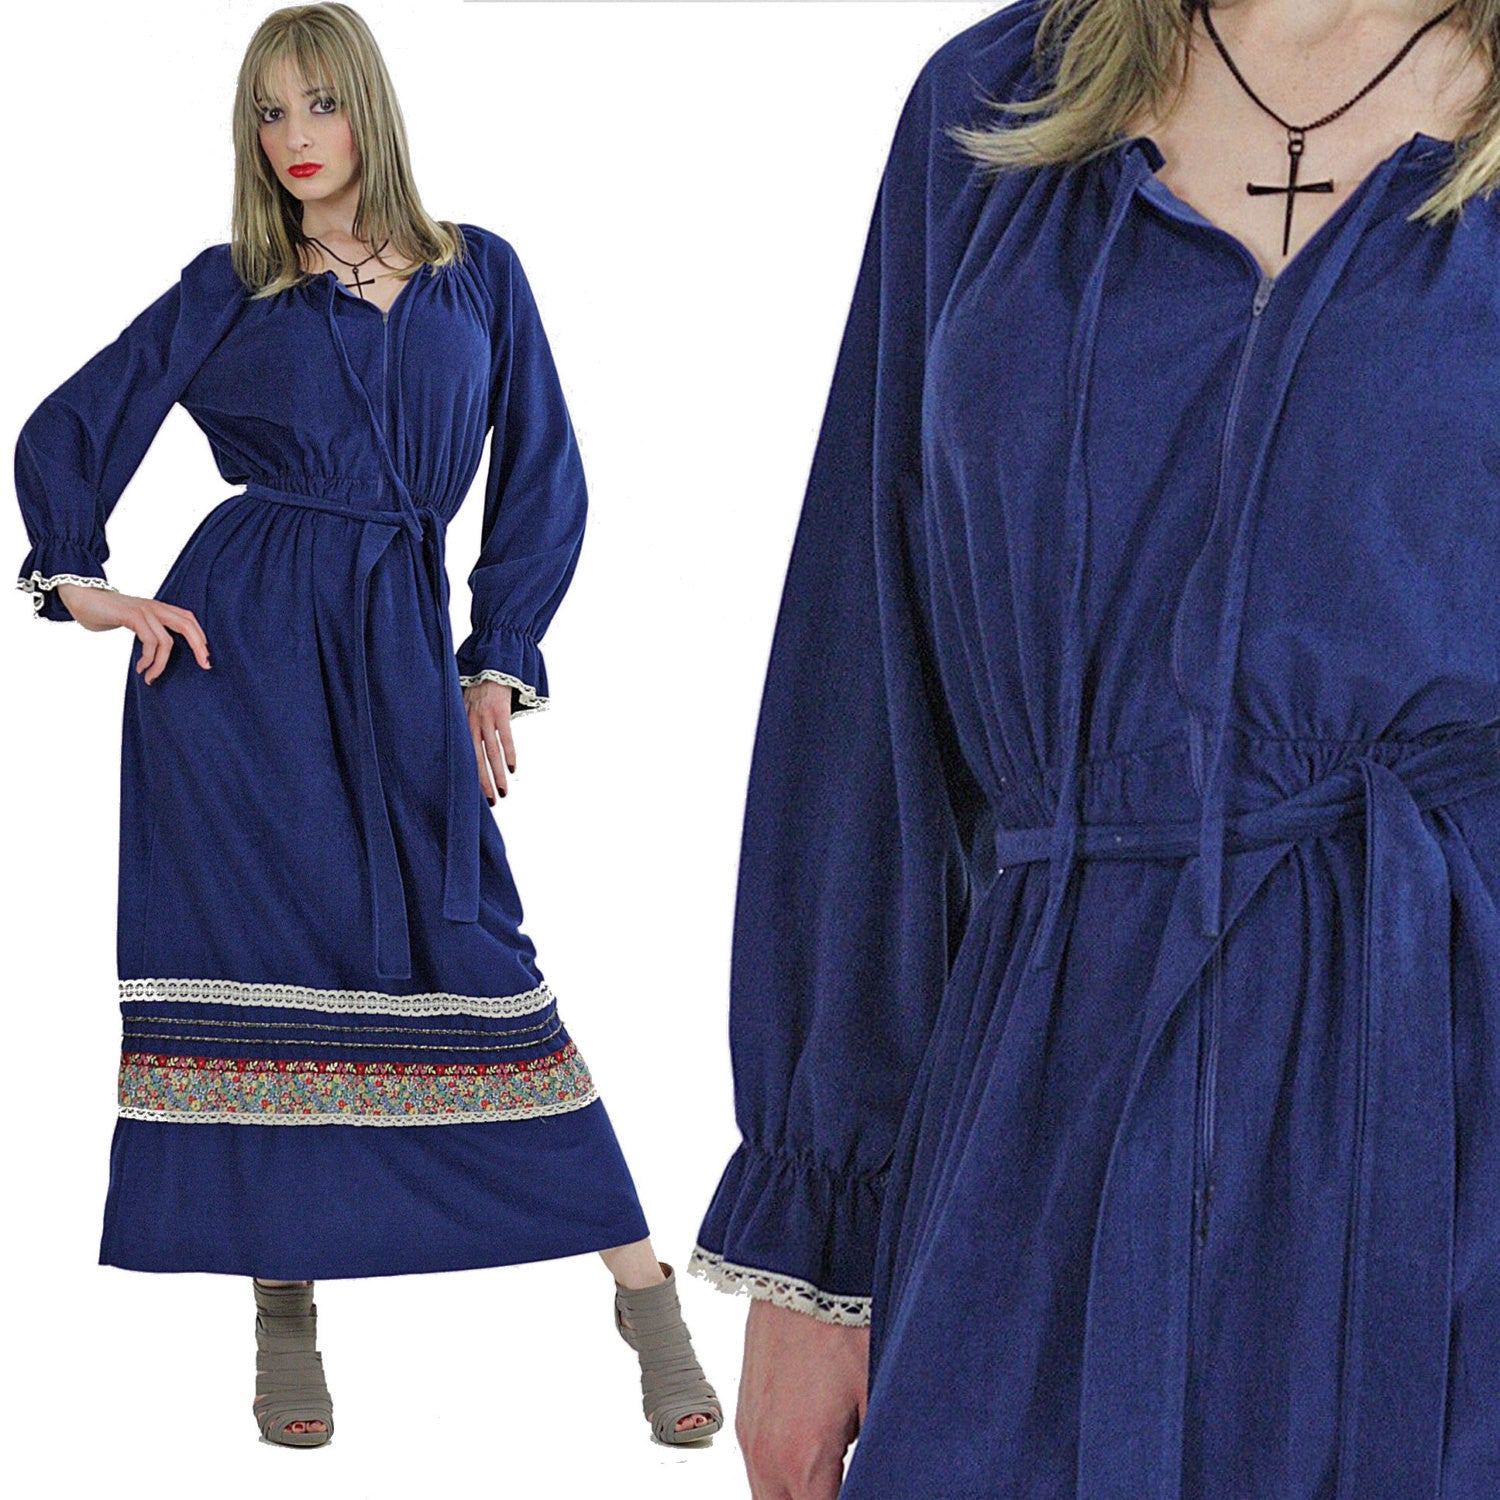 Velour caftan 70s hippie boho maxi dress Navy blue border design loung